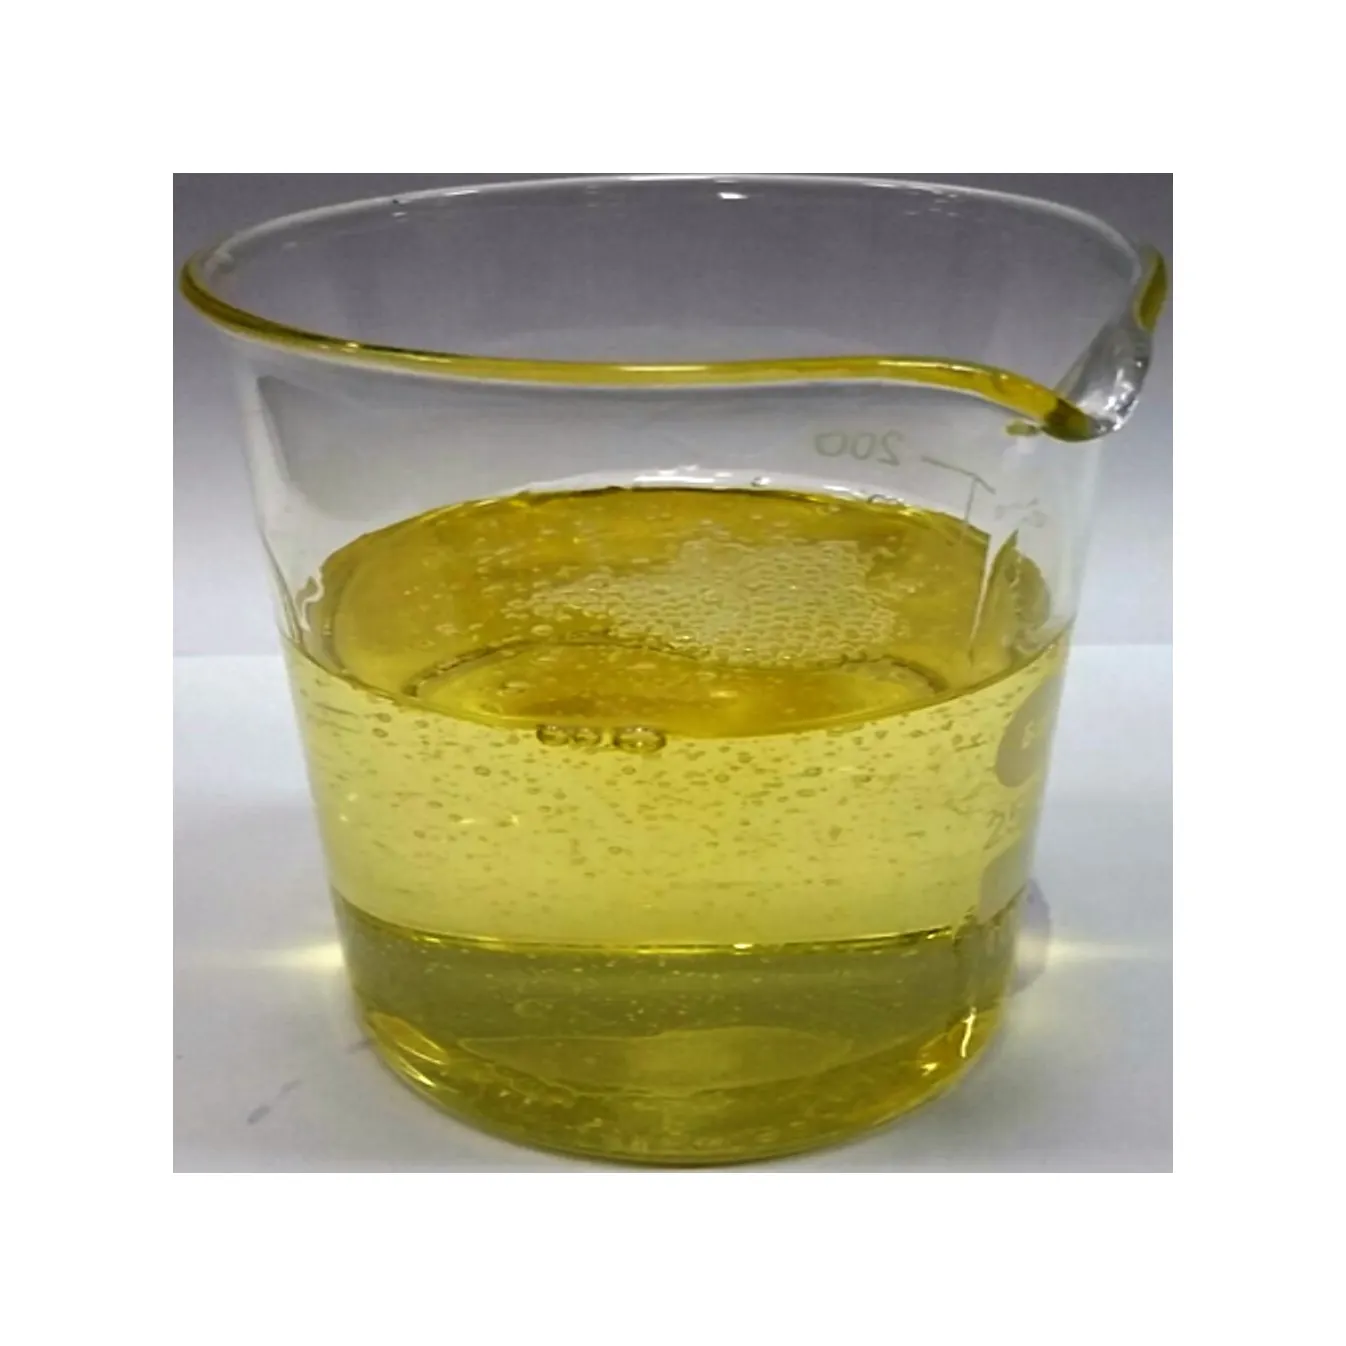 RPO processo di gomma olio lubrificante produzione fornitura a basso prezzo naftenico Base di gomma olio di lavorazione In magazzino